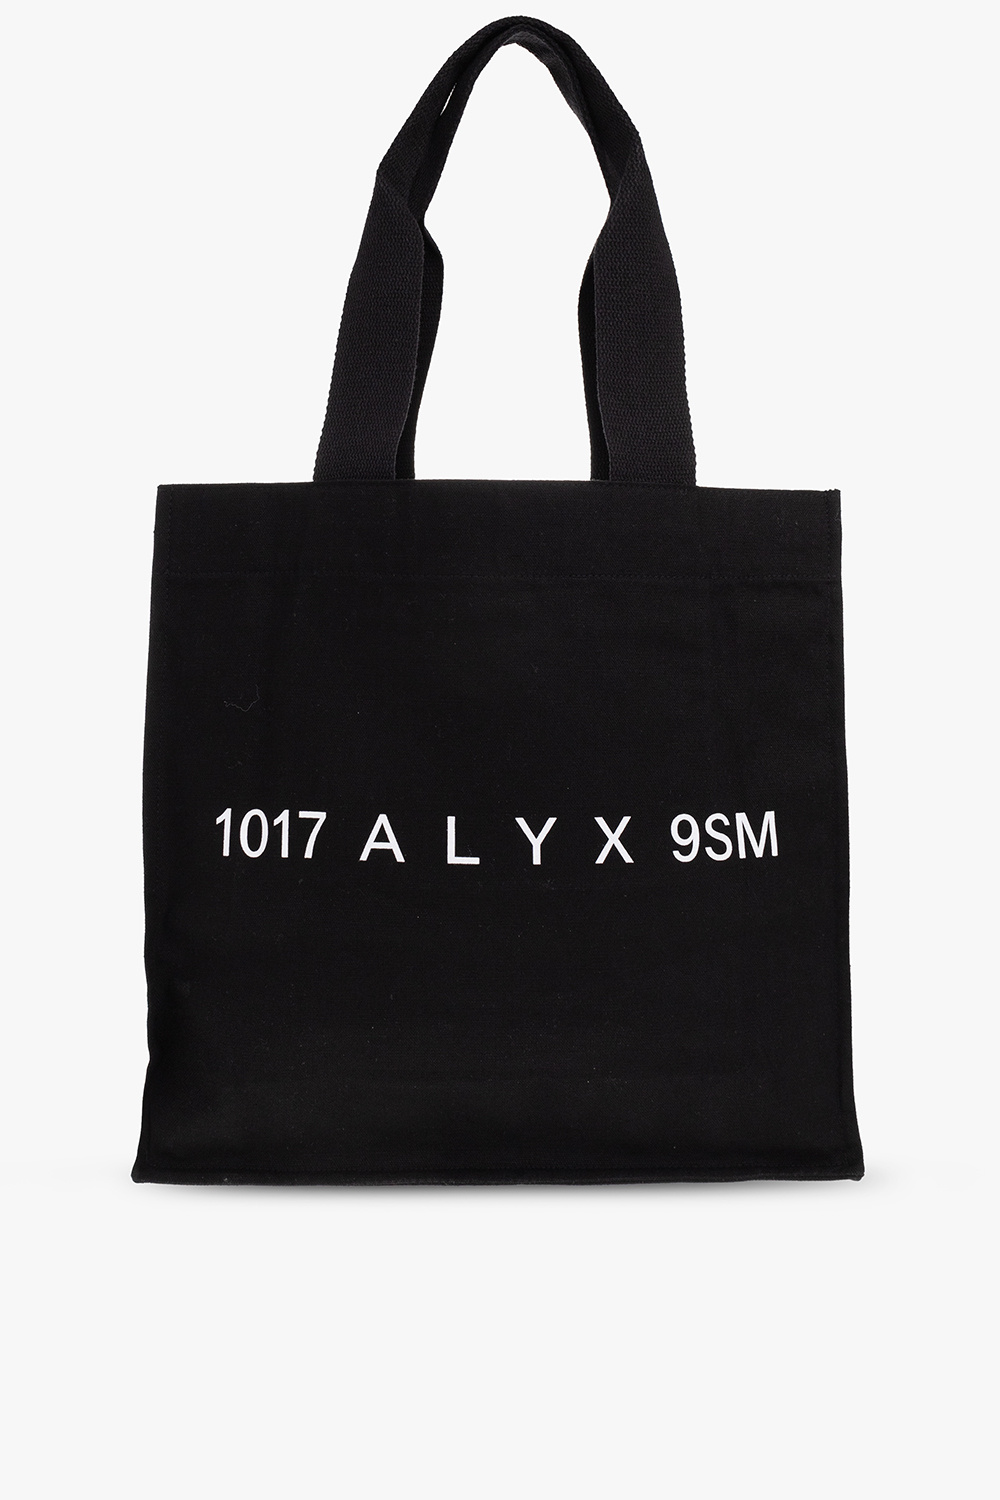 1017 ALYX 9SM Paintedper bag